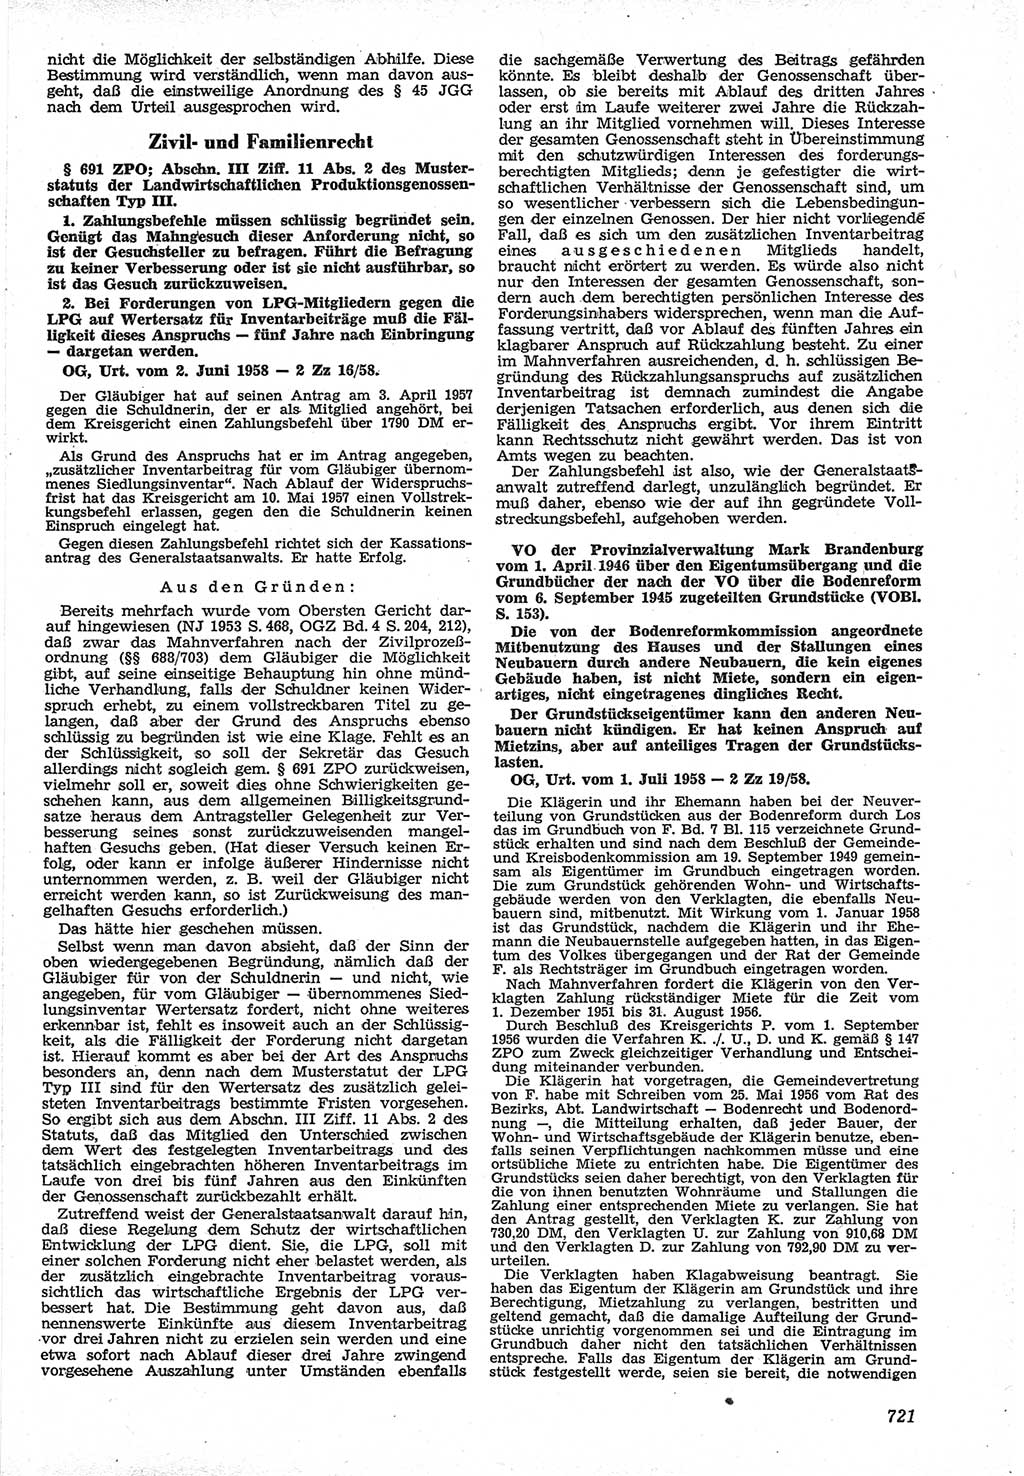 Neue Justiz (NJ), Zeitschrift für Recht und Rechtswissenschaft [Deutsche Demokratische Republik (DDR)], 12. Jahrgang 1958, Seite 721 (NJ DDR 1958, S. 721)